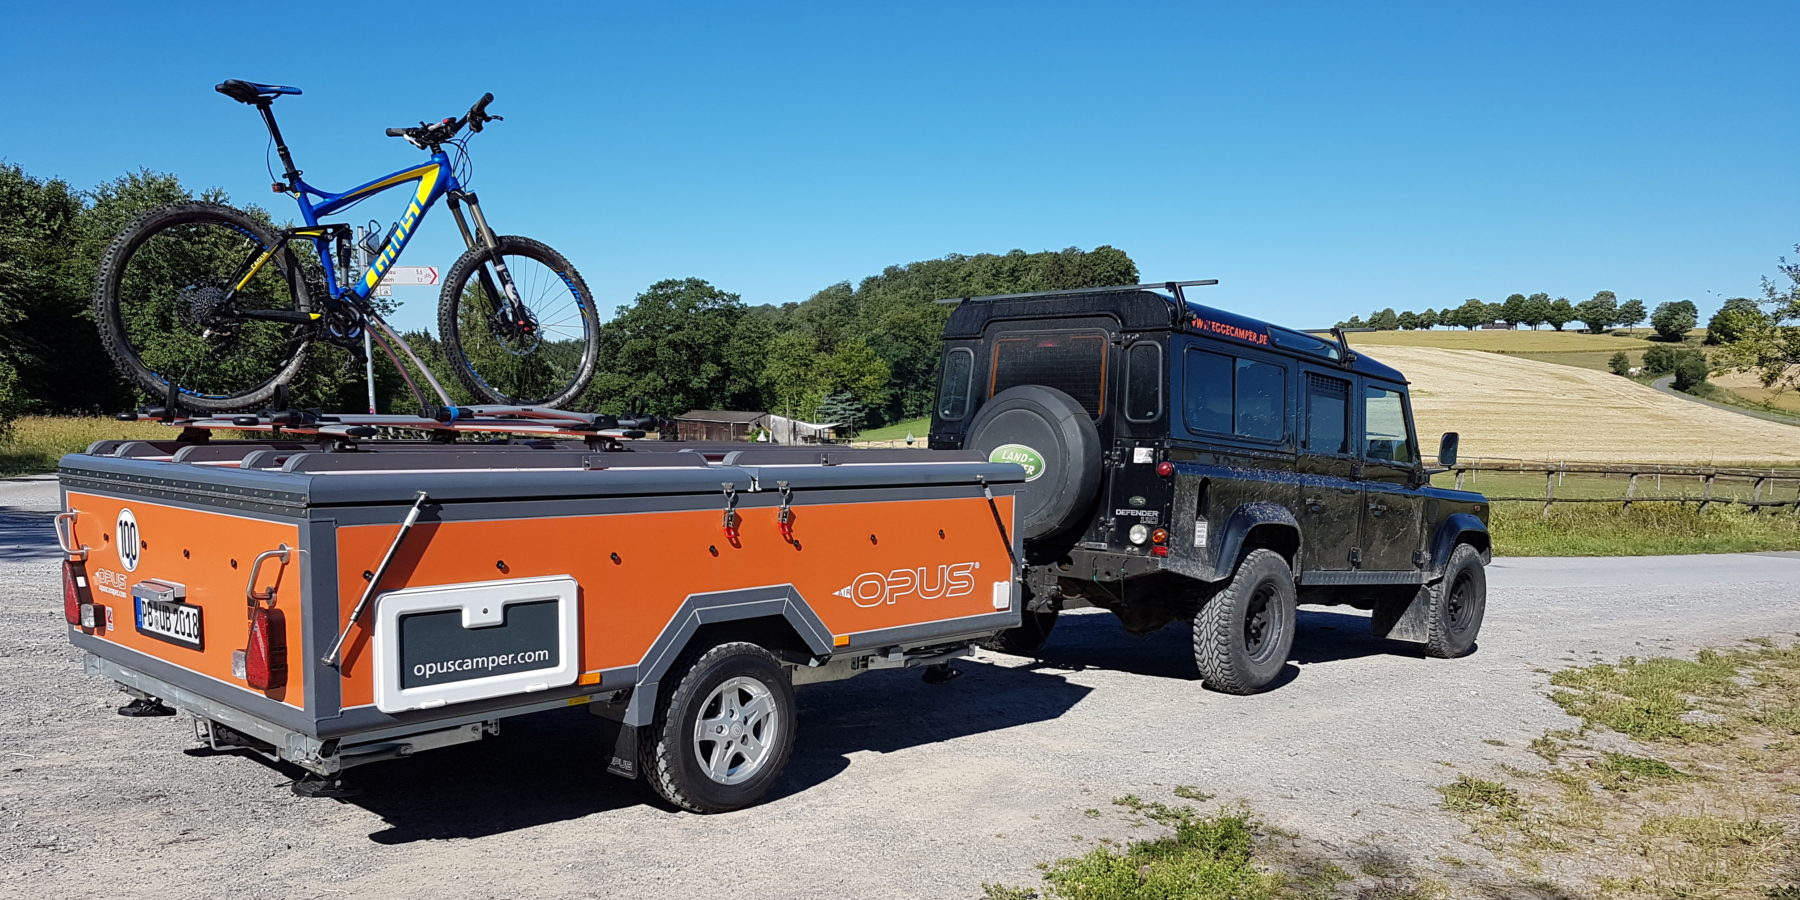 1pc RV porte support camping car remorque stockage loquet - Temu Belgium